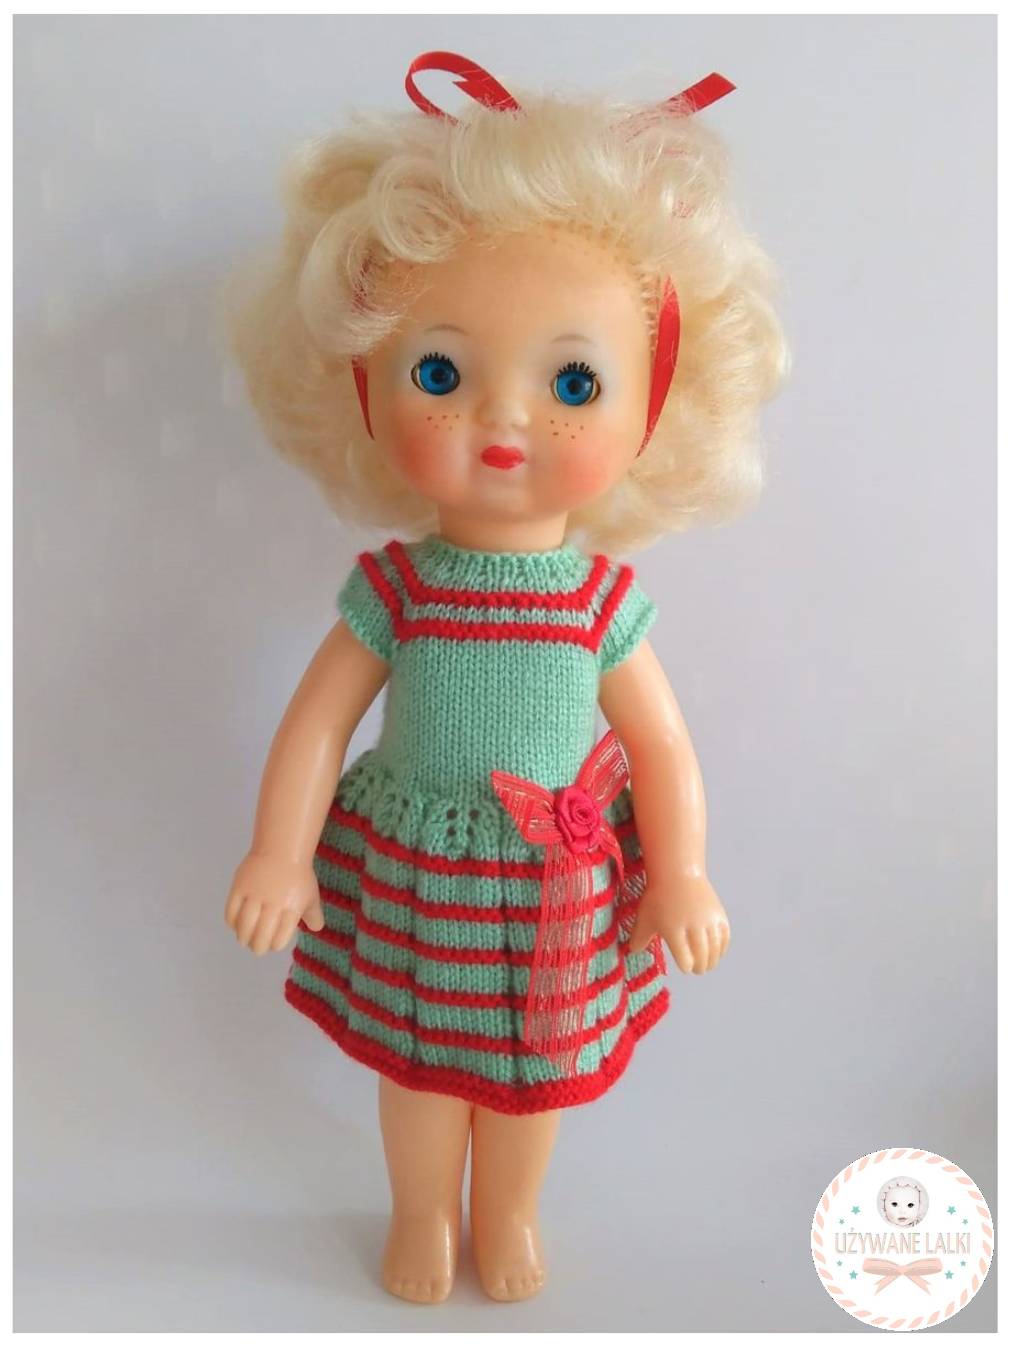 Rosyjska lalka z czasów PRL - Używane lalki - naprawa lalek i pluszaków